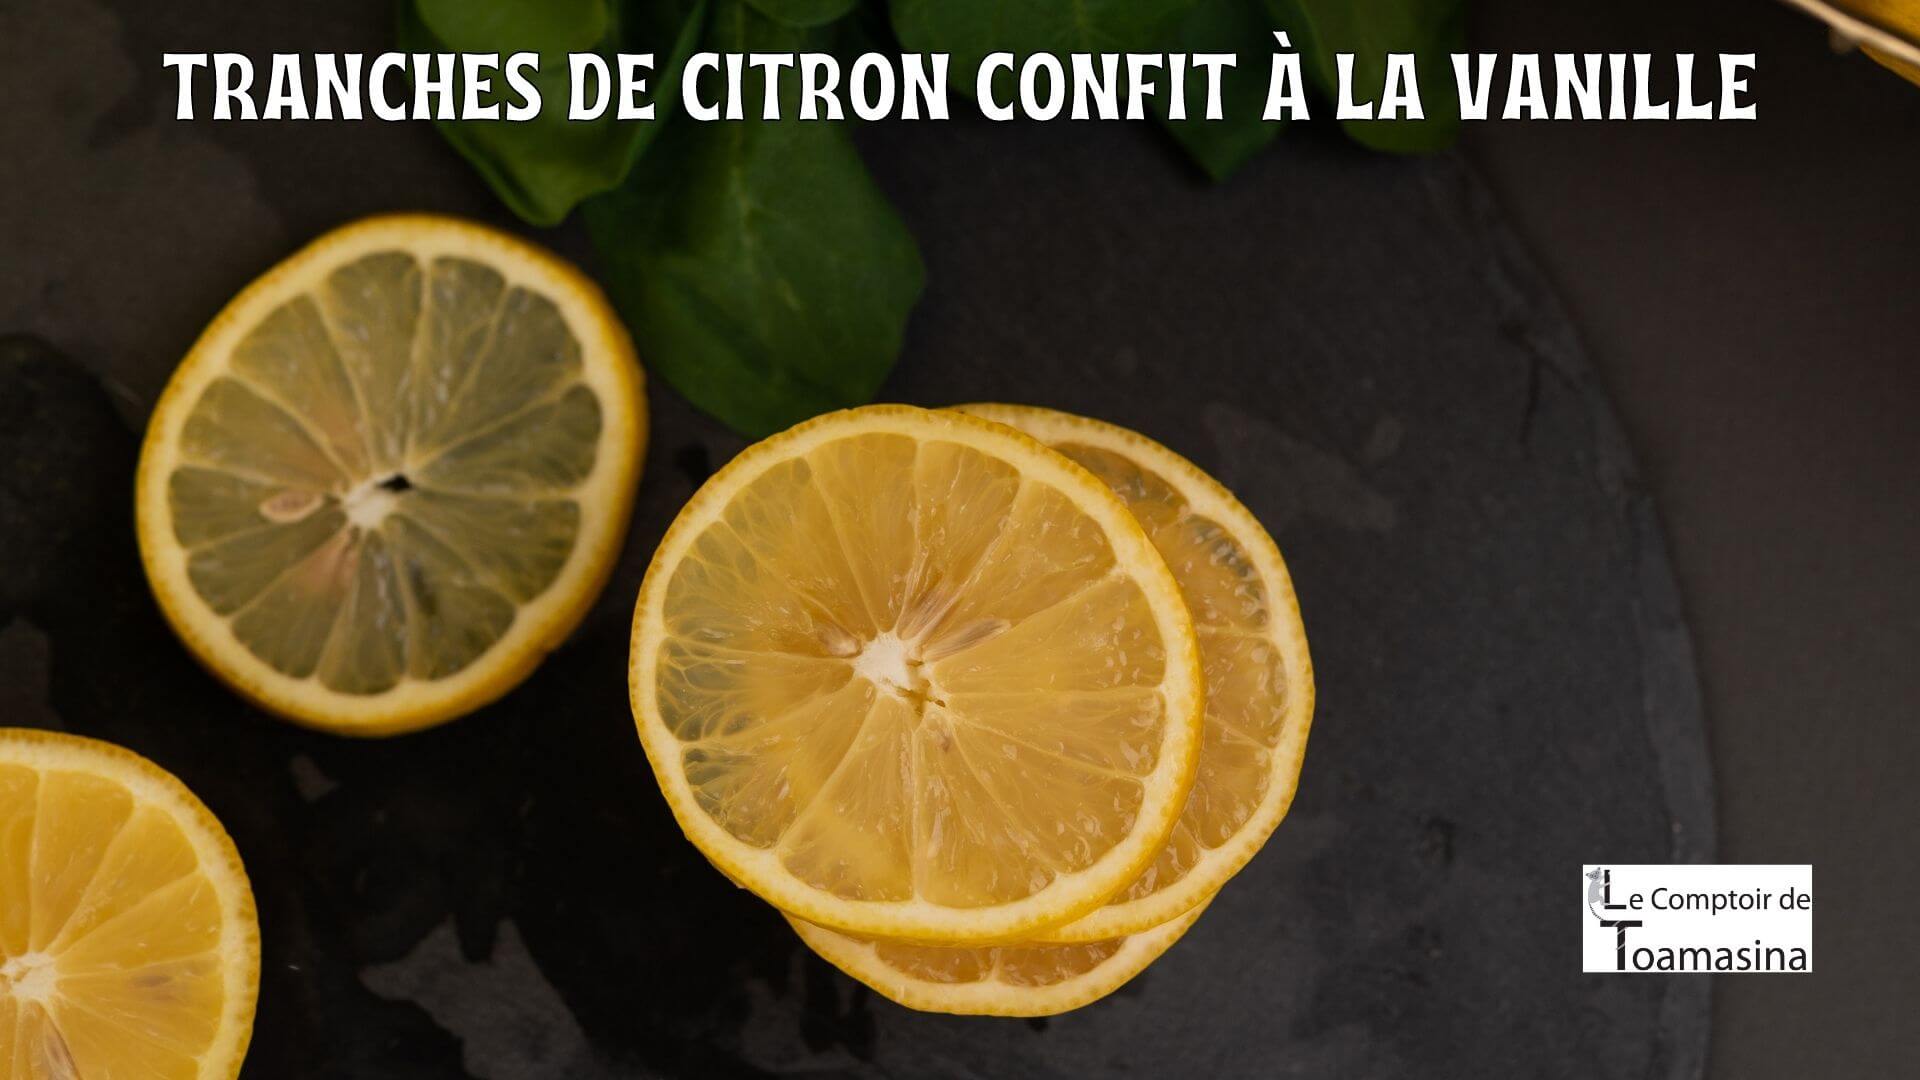 Tranches de citron confit à la vanille